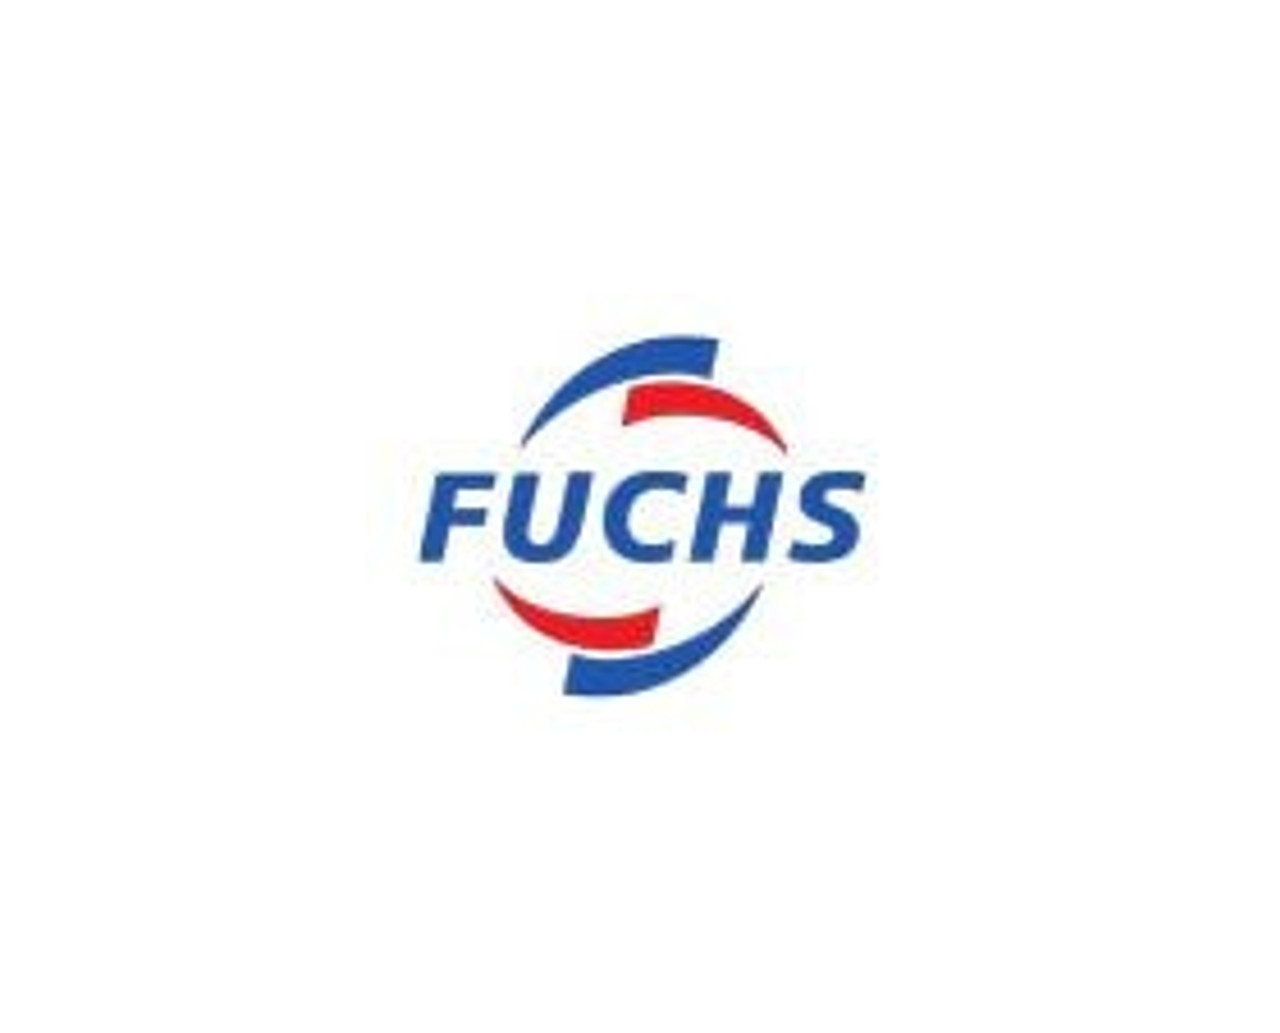 Fuchs FFuchs FM Hydraulic Oil 68, NSF H1 Kosher - 330 Gallon ToteM Hydraulic Oil 68